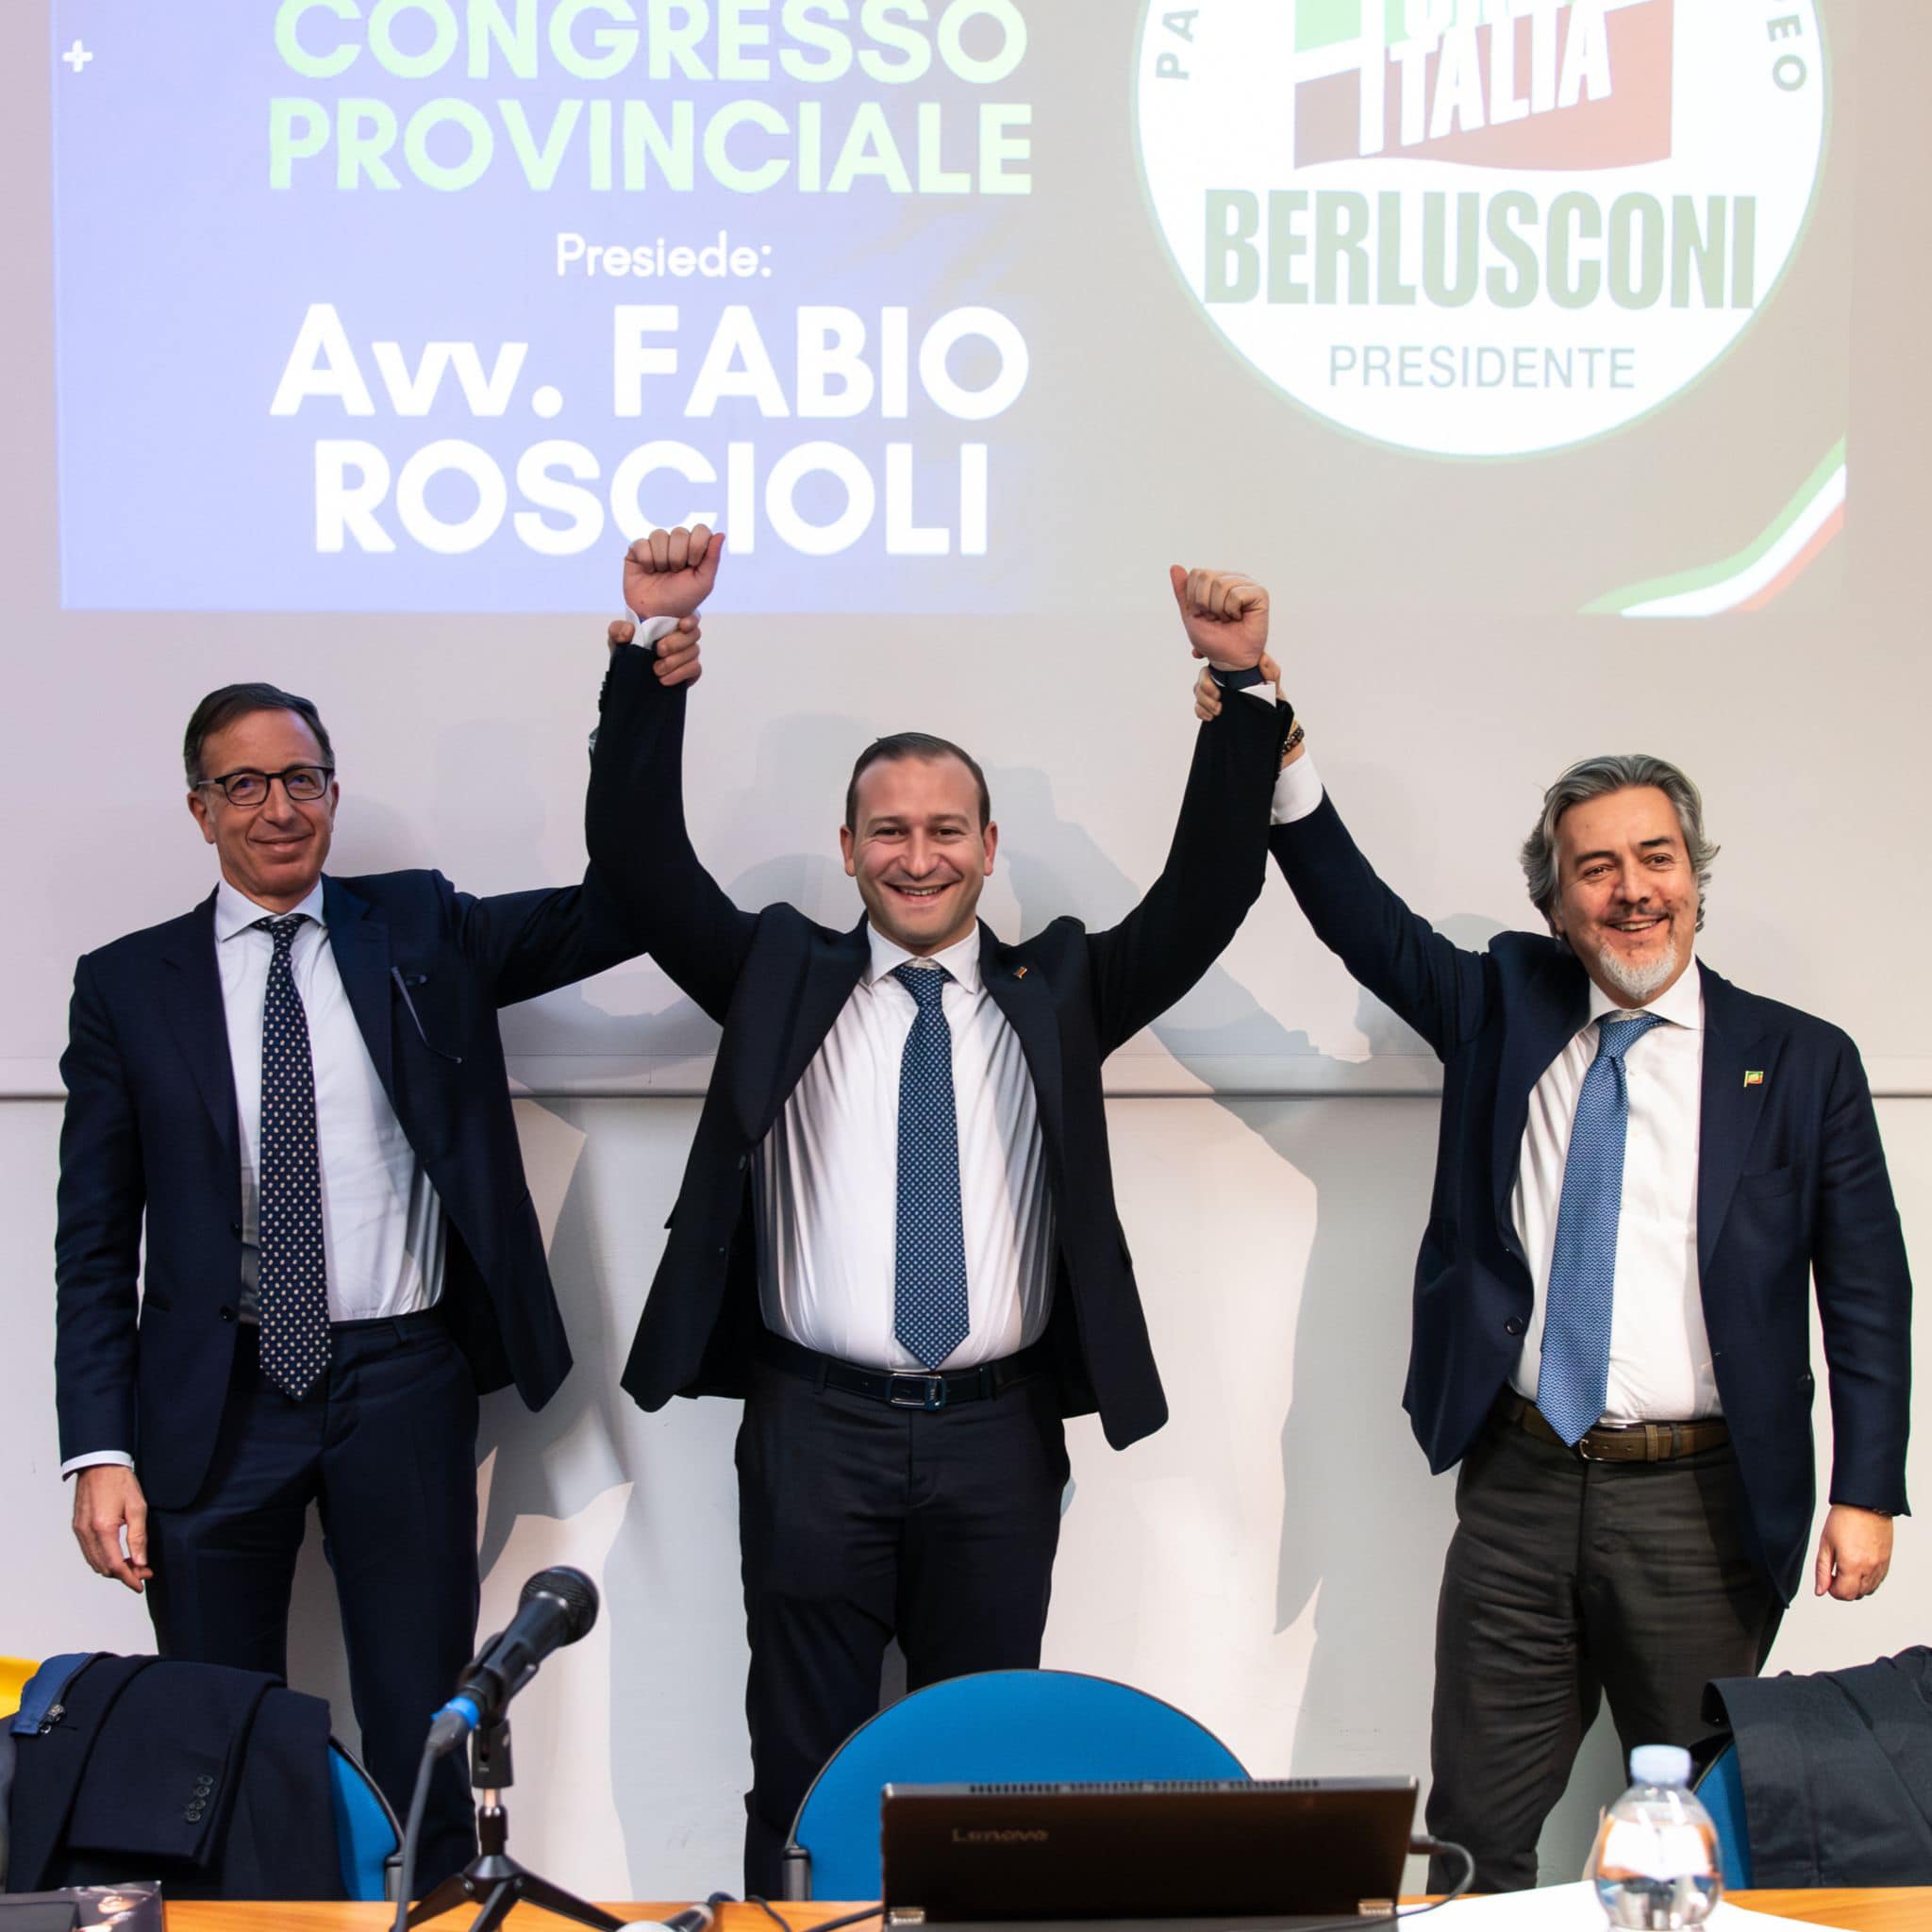 Ascoli Piceno – Valerio Pignotti nuovo coordinatore provinciale di Forza Italia